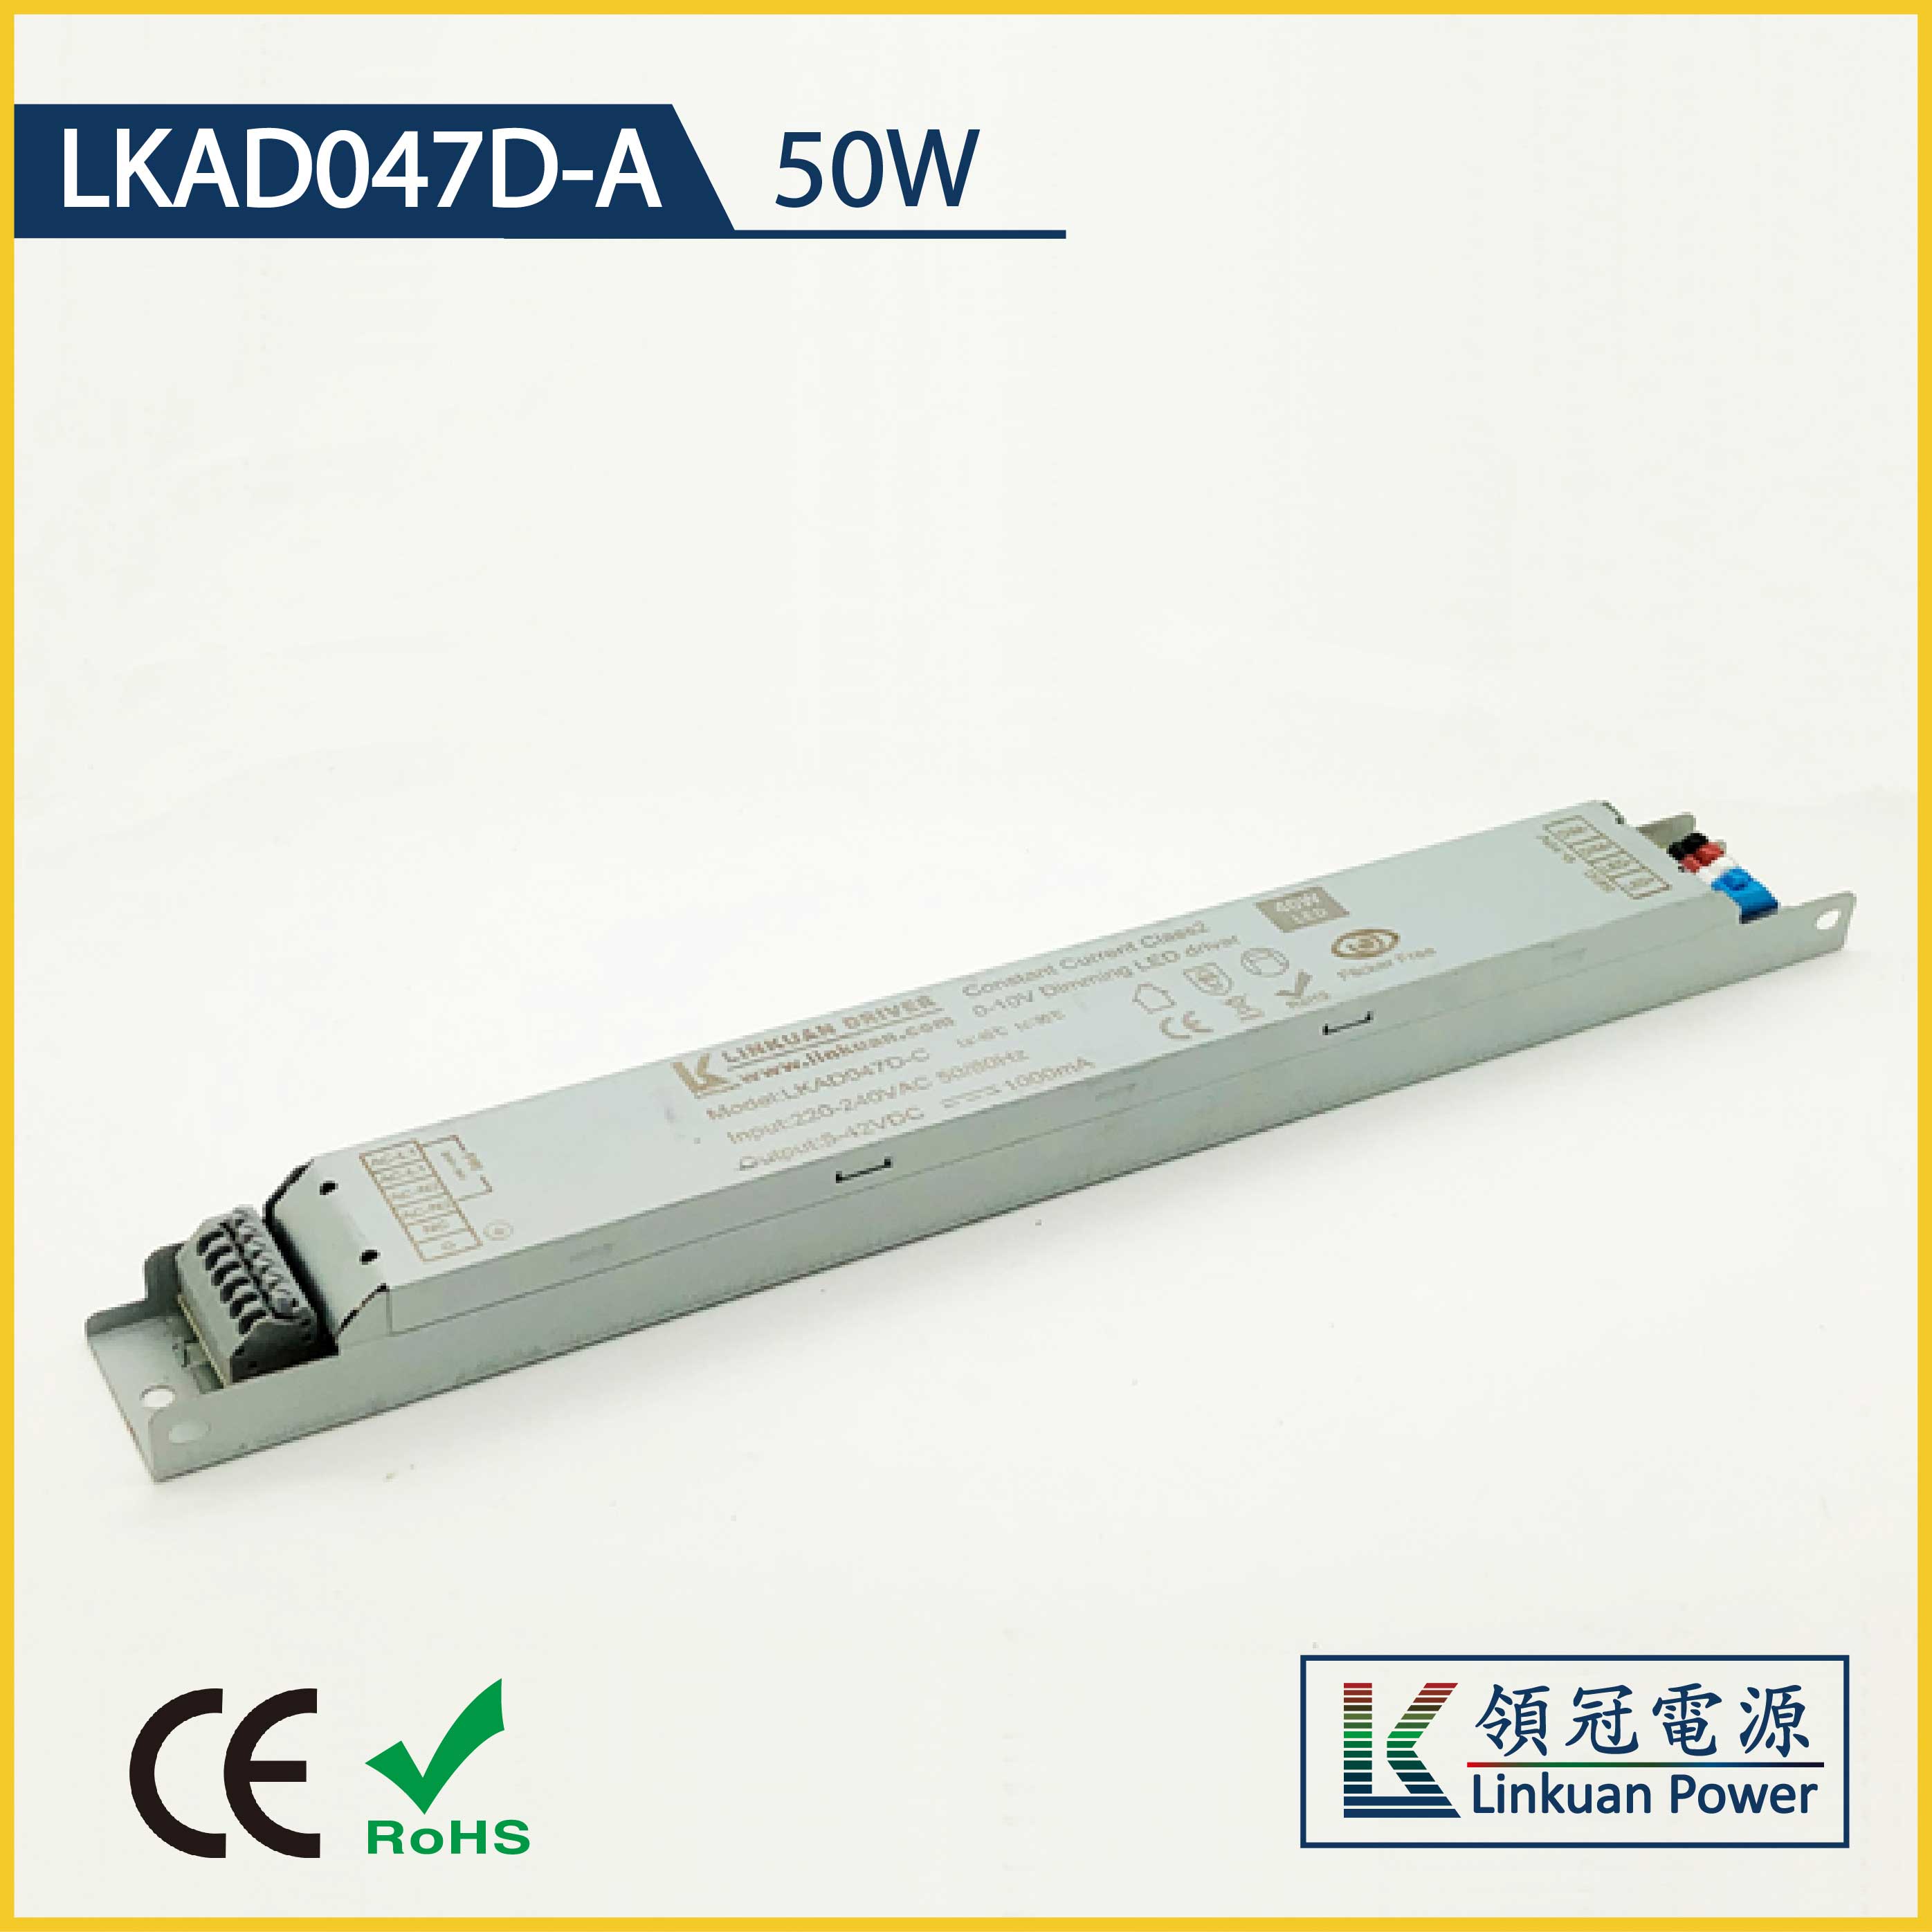 LKAD047D-A 50W 10-42V 1200mA Linear Lamp CCT adjusting led driver